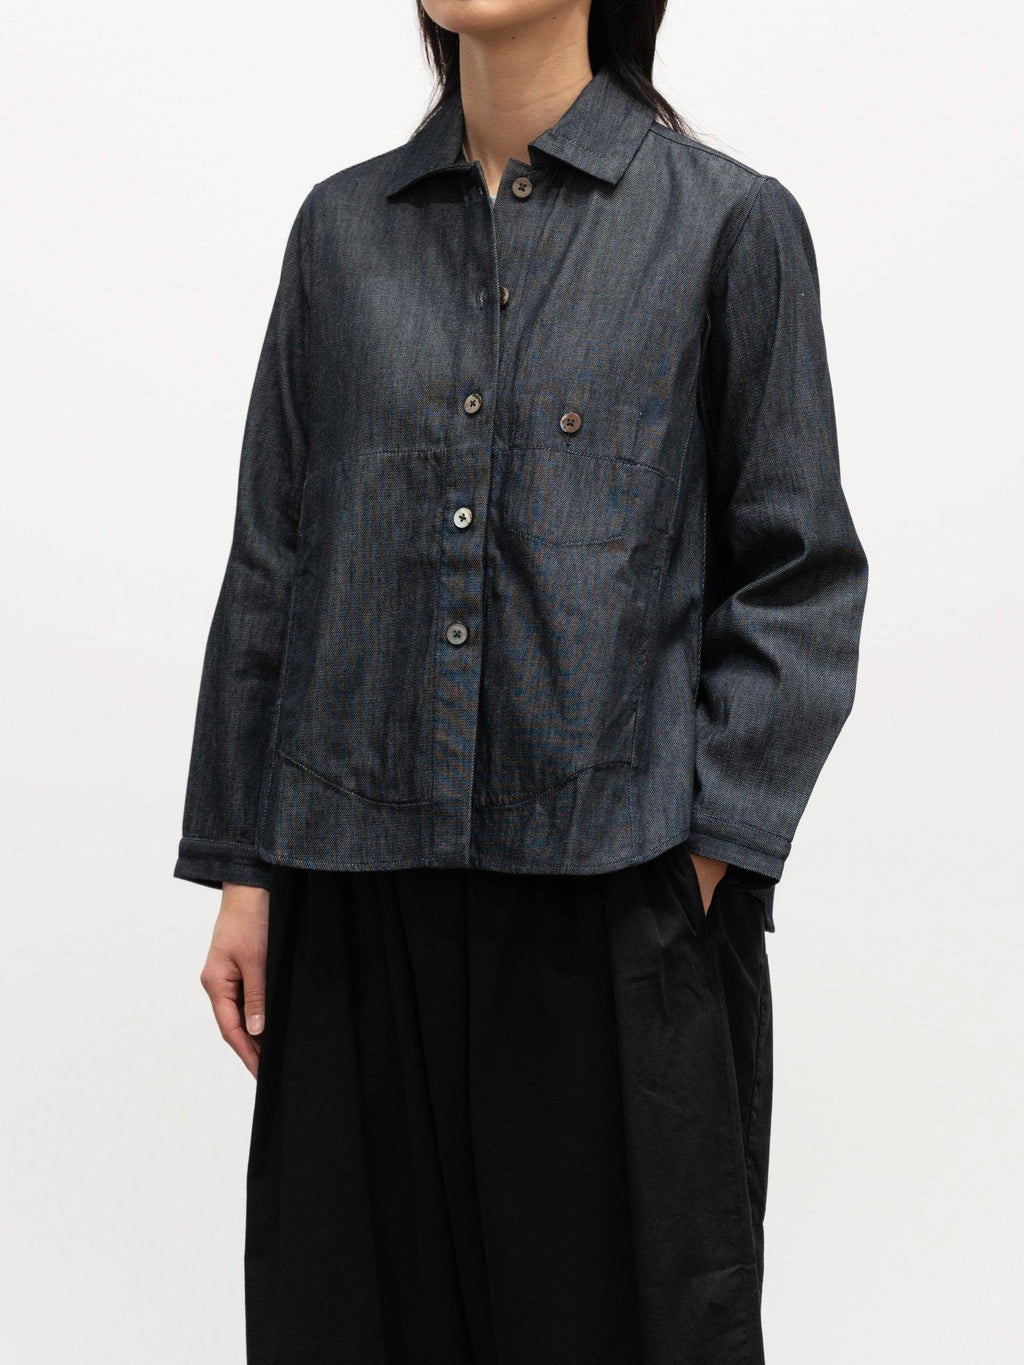 Namu Shop - Jan Machenhauer Kim Shirt Jacket - Denim Cotton